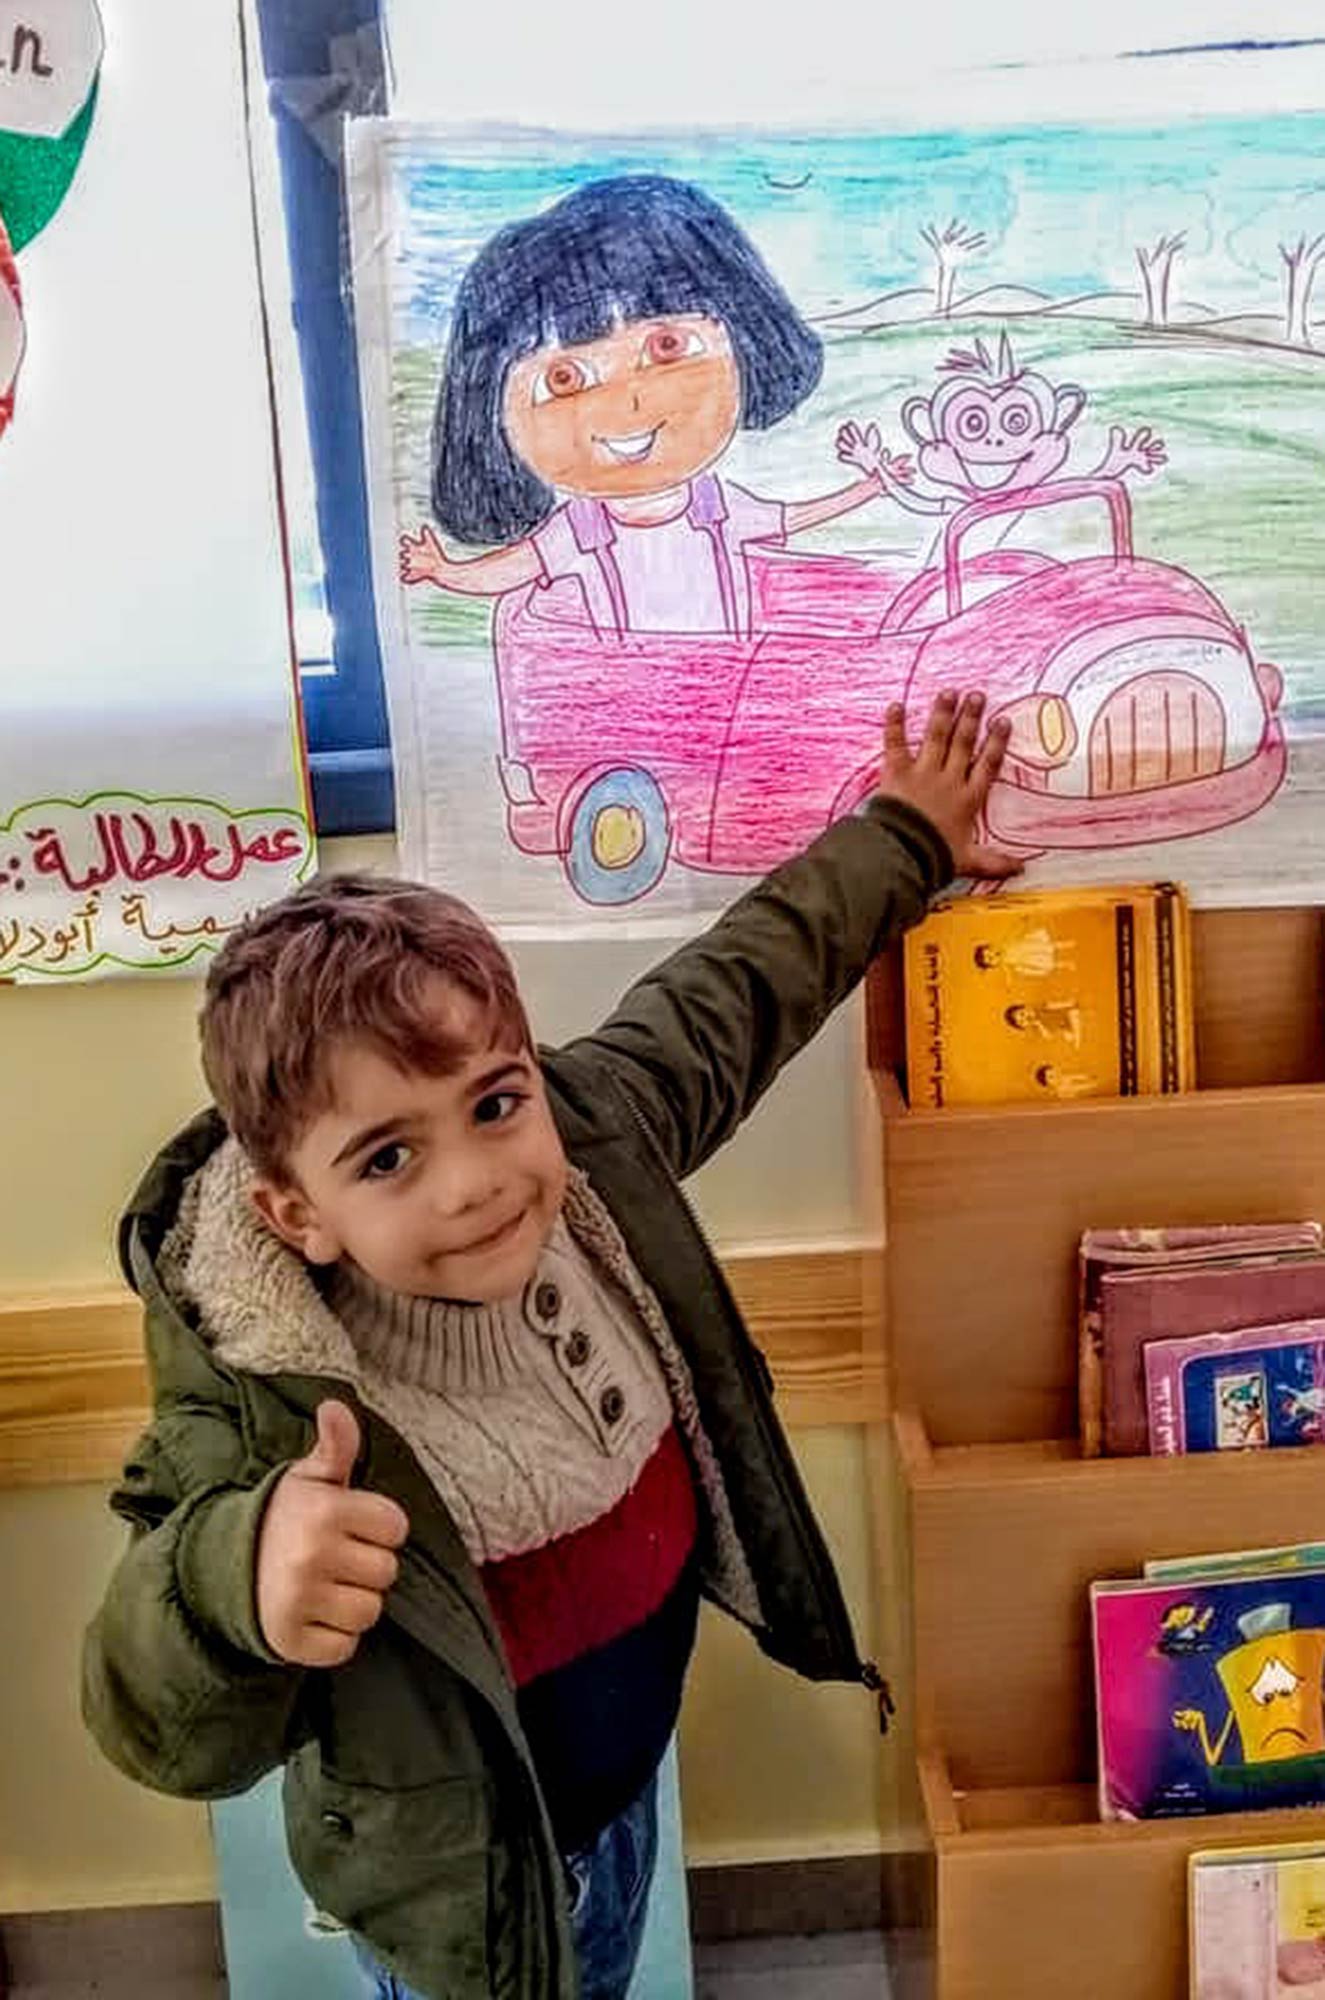 A preschooler poses in front of Dora the Explorer in his new preschool.